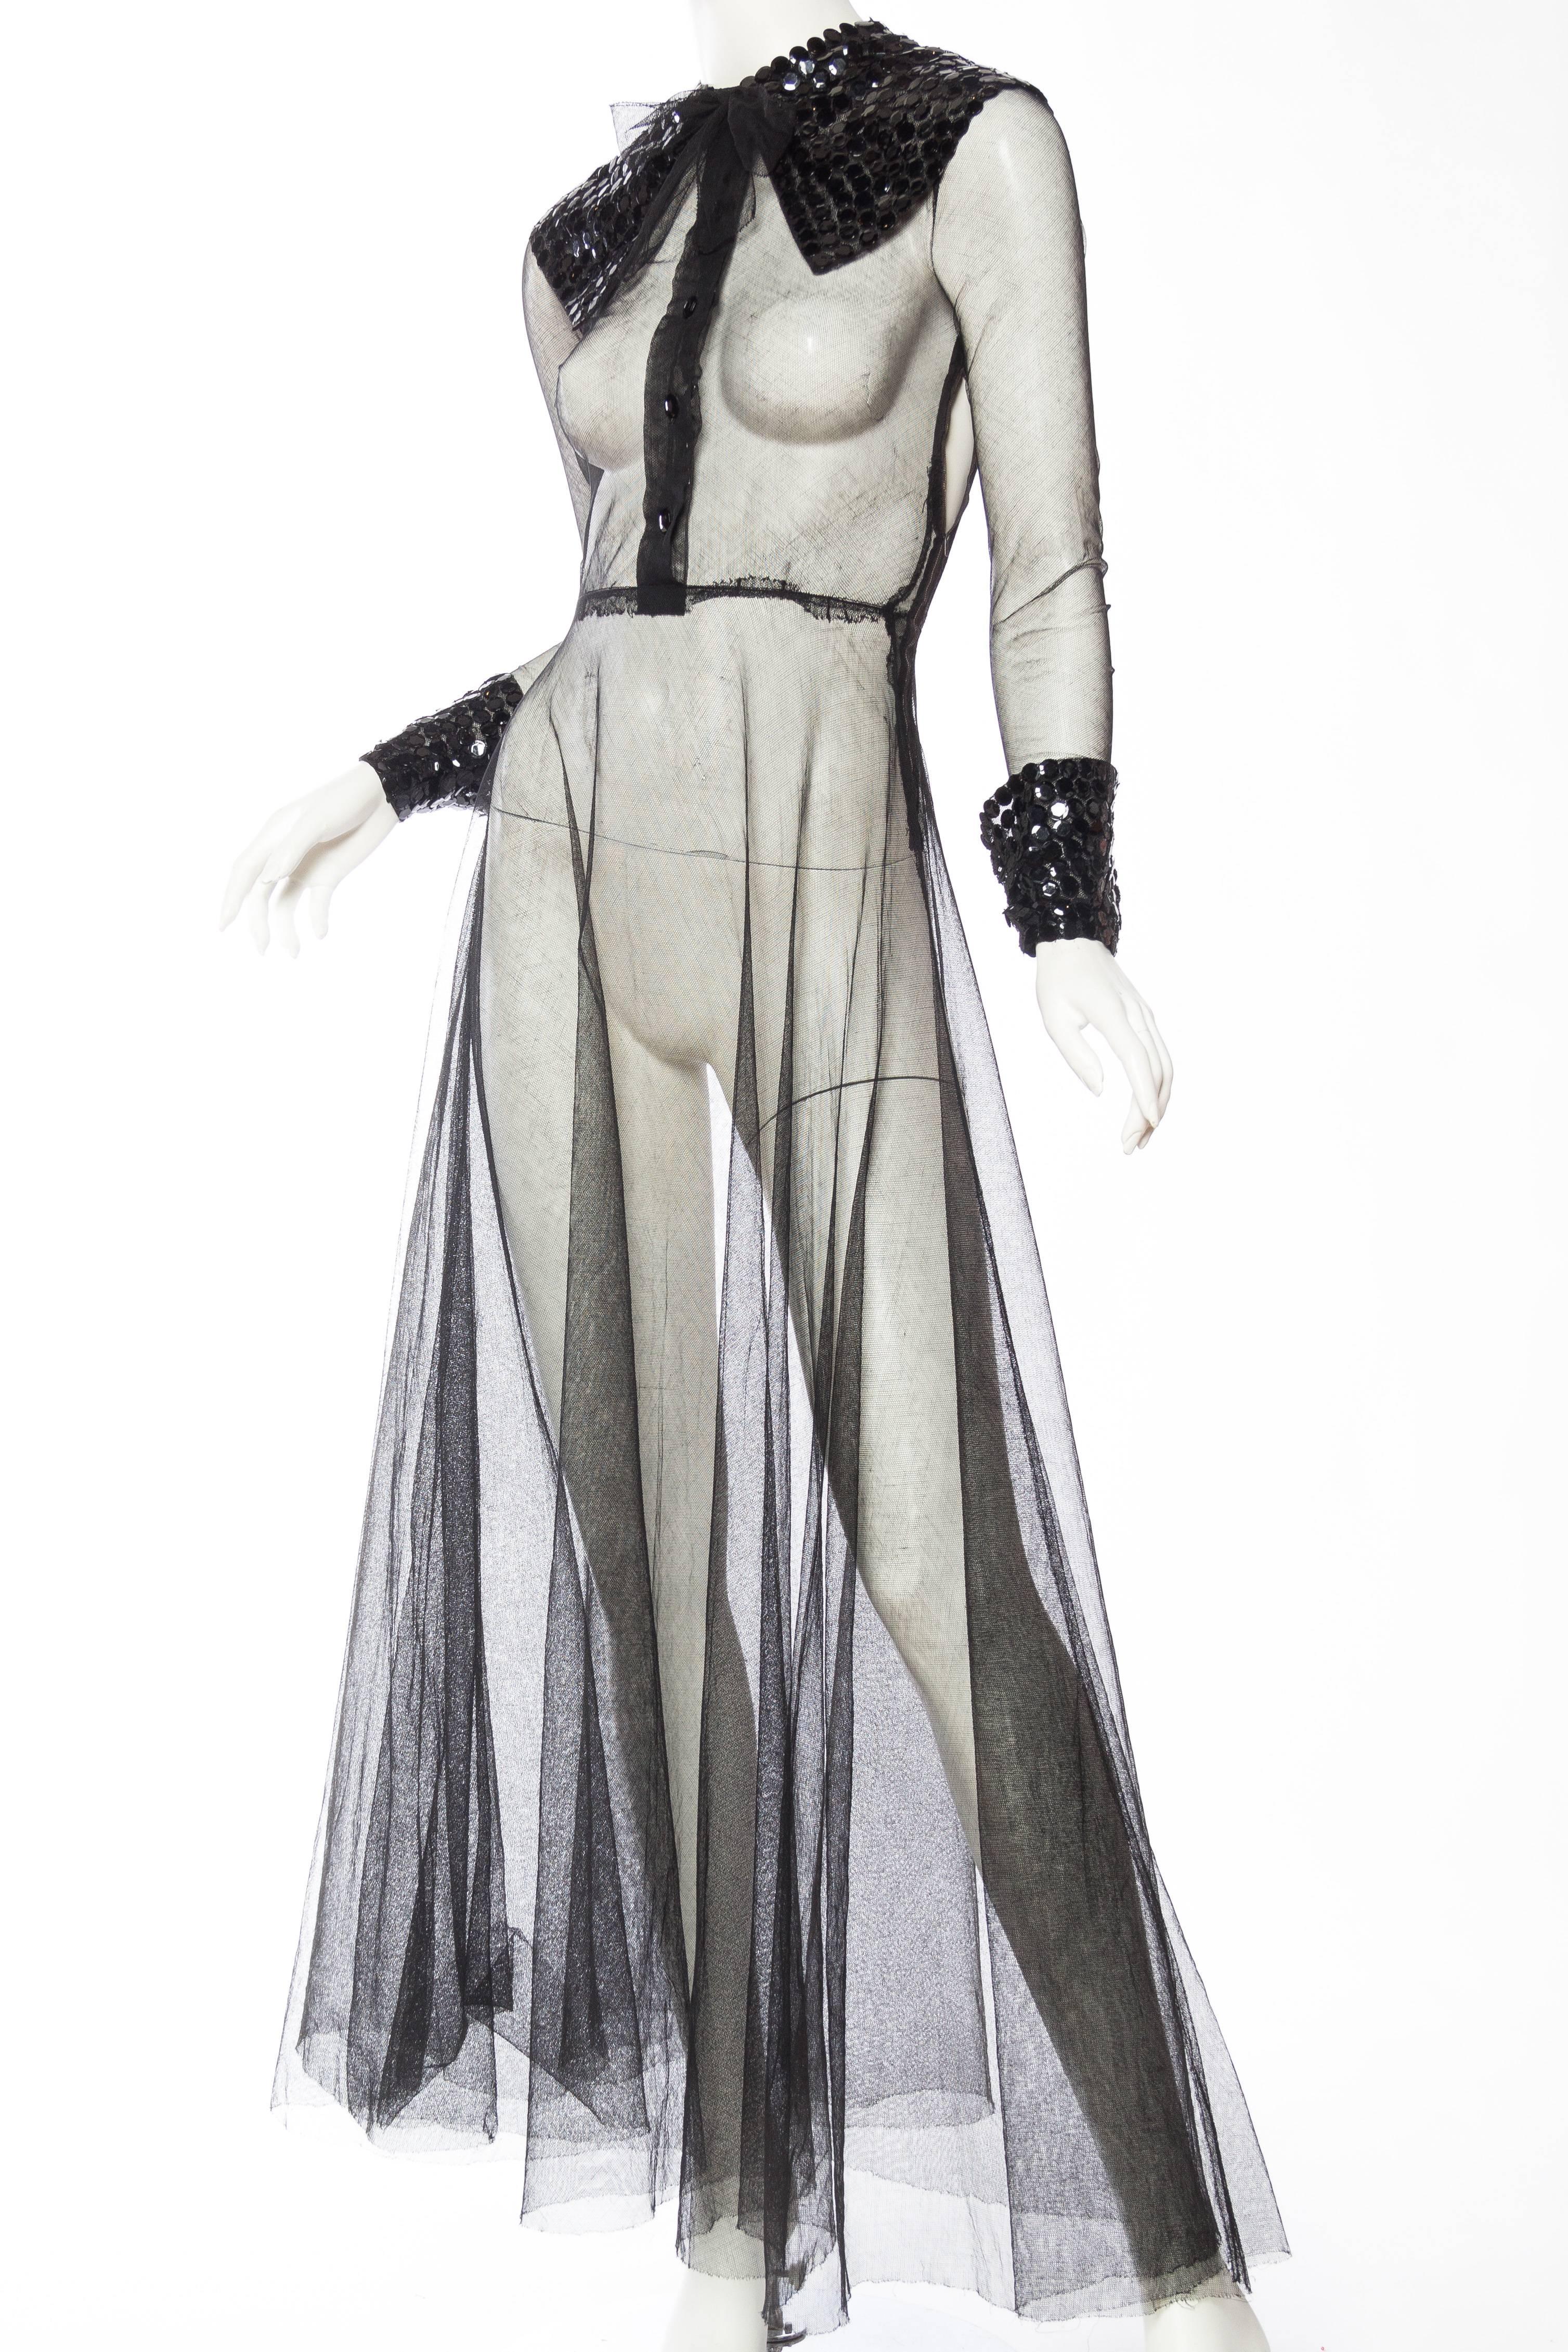 Wir sind verliebt in dieses Kleid aus den 1930er Jahren, das offensichtlich von Lanvin inspiriert ist, aber dem heutigen Gucci sehr ähnlich ist, finden Sie nicht auch? Das Netz des Kleides ist in nahezu einwandfreiem Zustand, jedoch gibt es ein paar